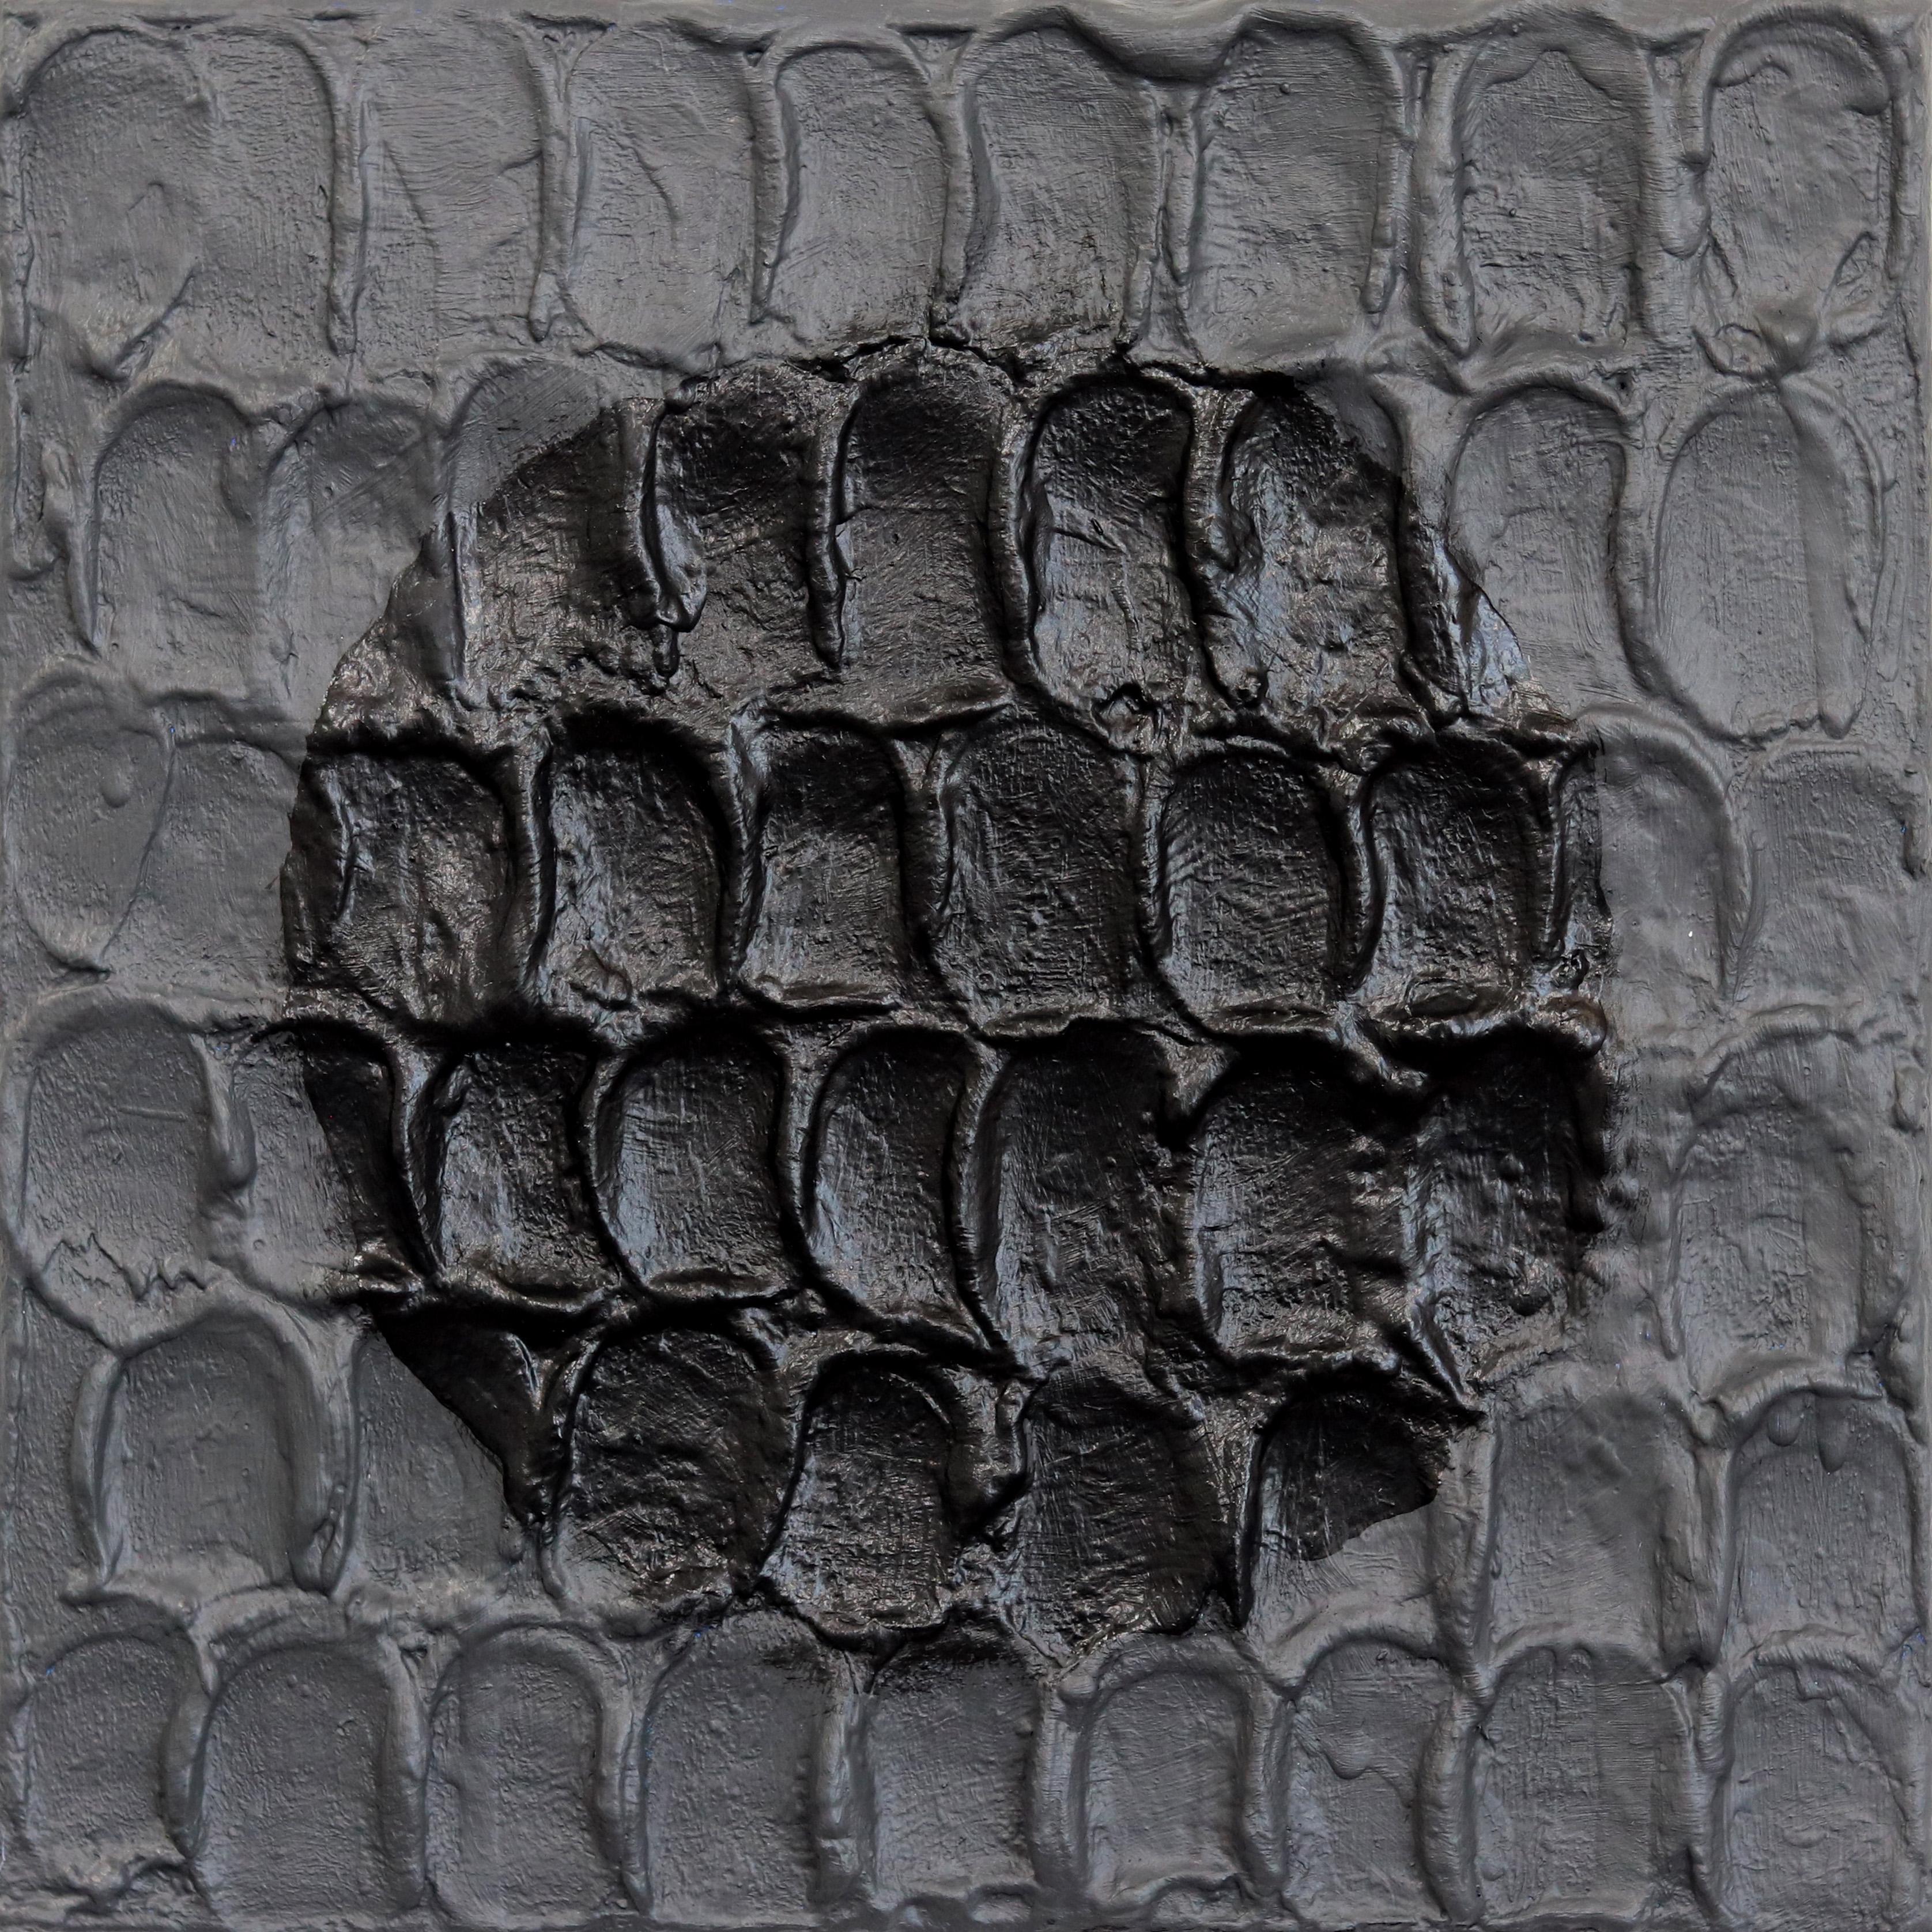 Primitive Moderne #2 – schwarzes, strukturiertes, abstraktes, minimalistisches Kunstwerk auf Leinwand